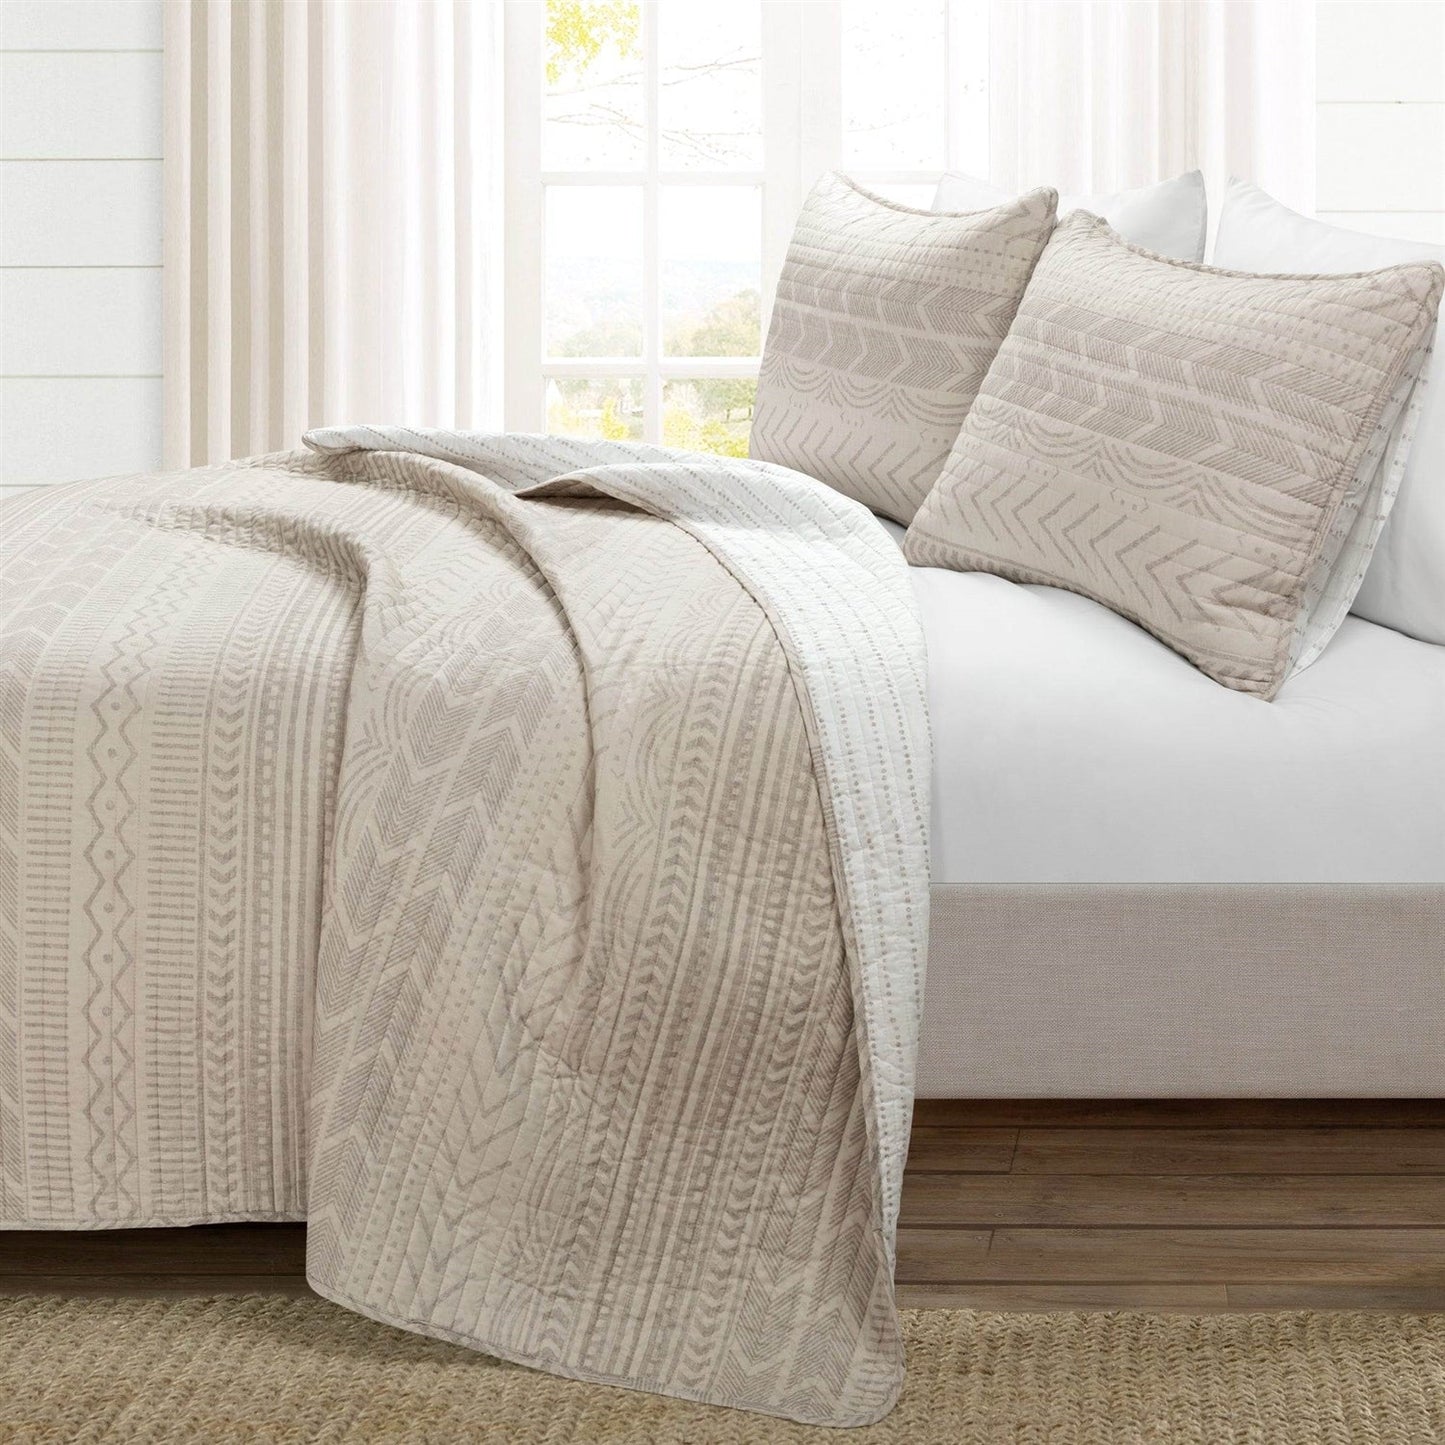 Bedroom > Quilts & Blankets - Full/Queen Scandinavian Chevron Beige Tan Reversible Cotton Quilt Set